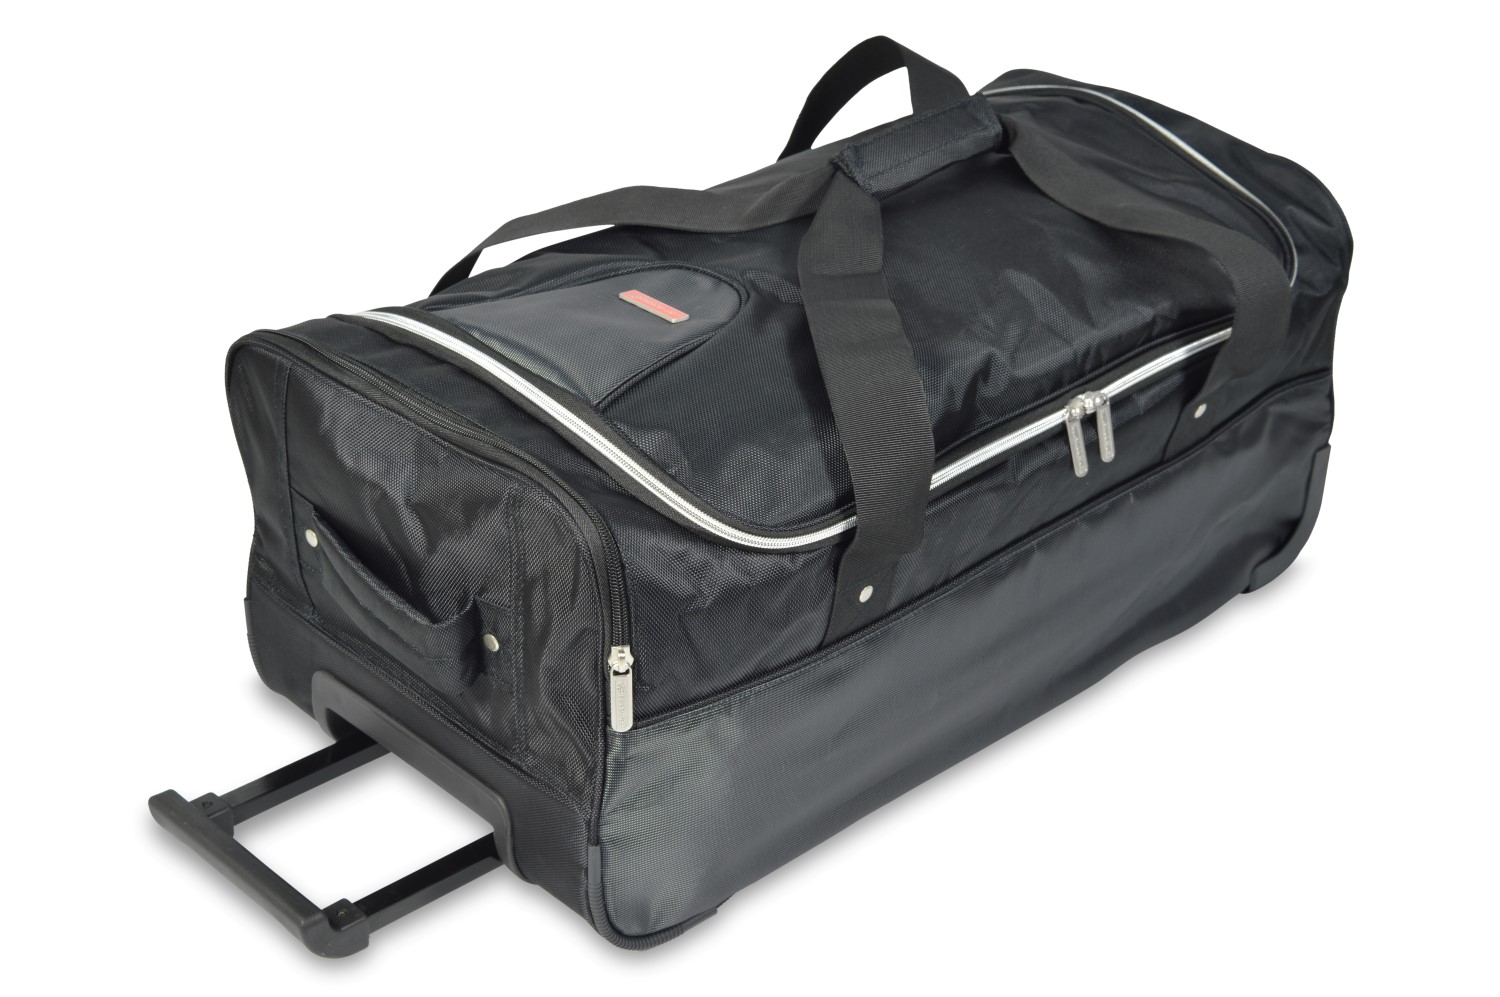 Trolley bag - 31x26x60cm (WxHxL)